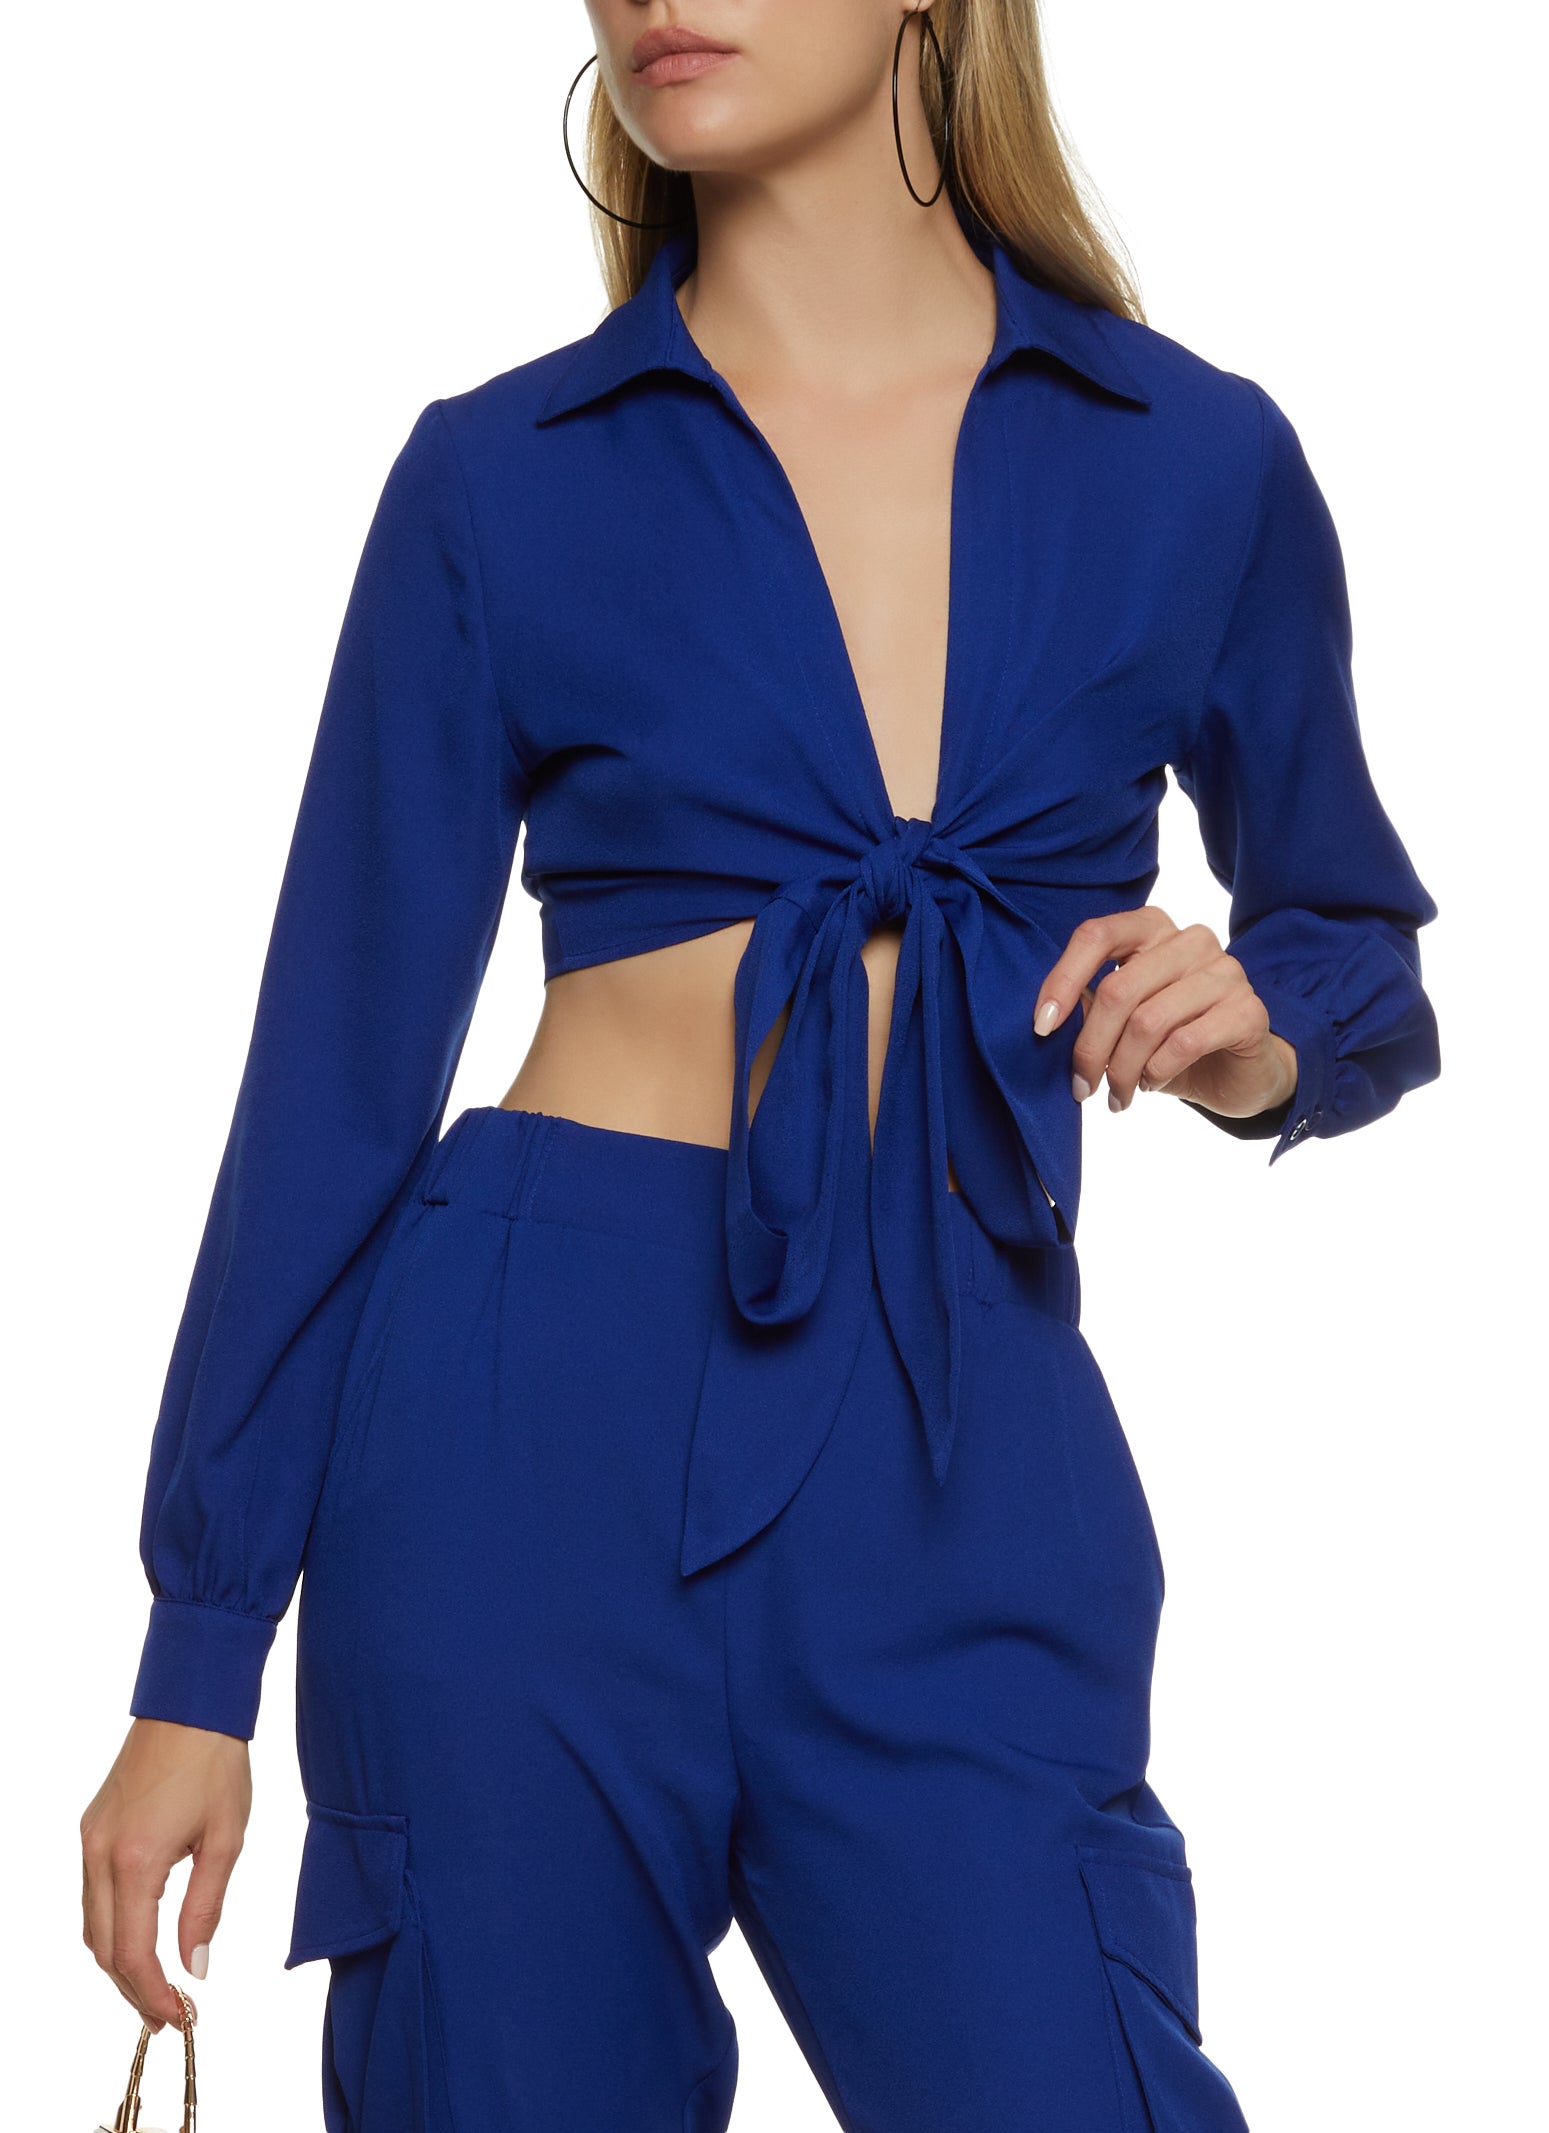 Womens Crepe Knit Tie Front Crop Top, Blue, Size L